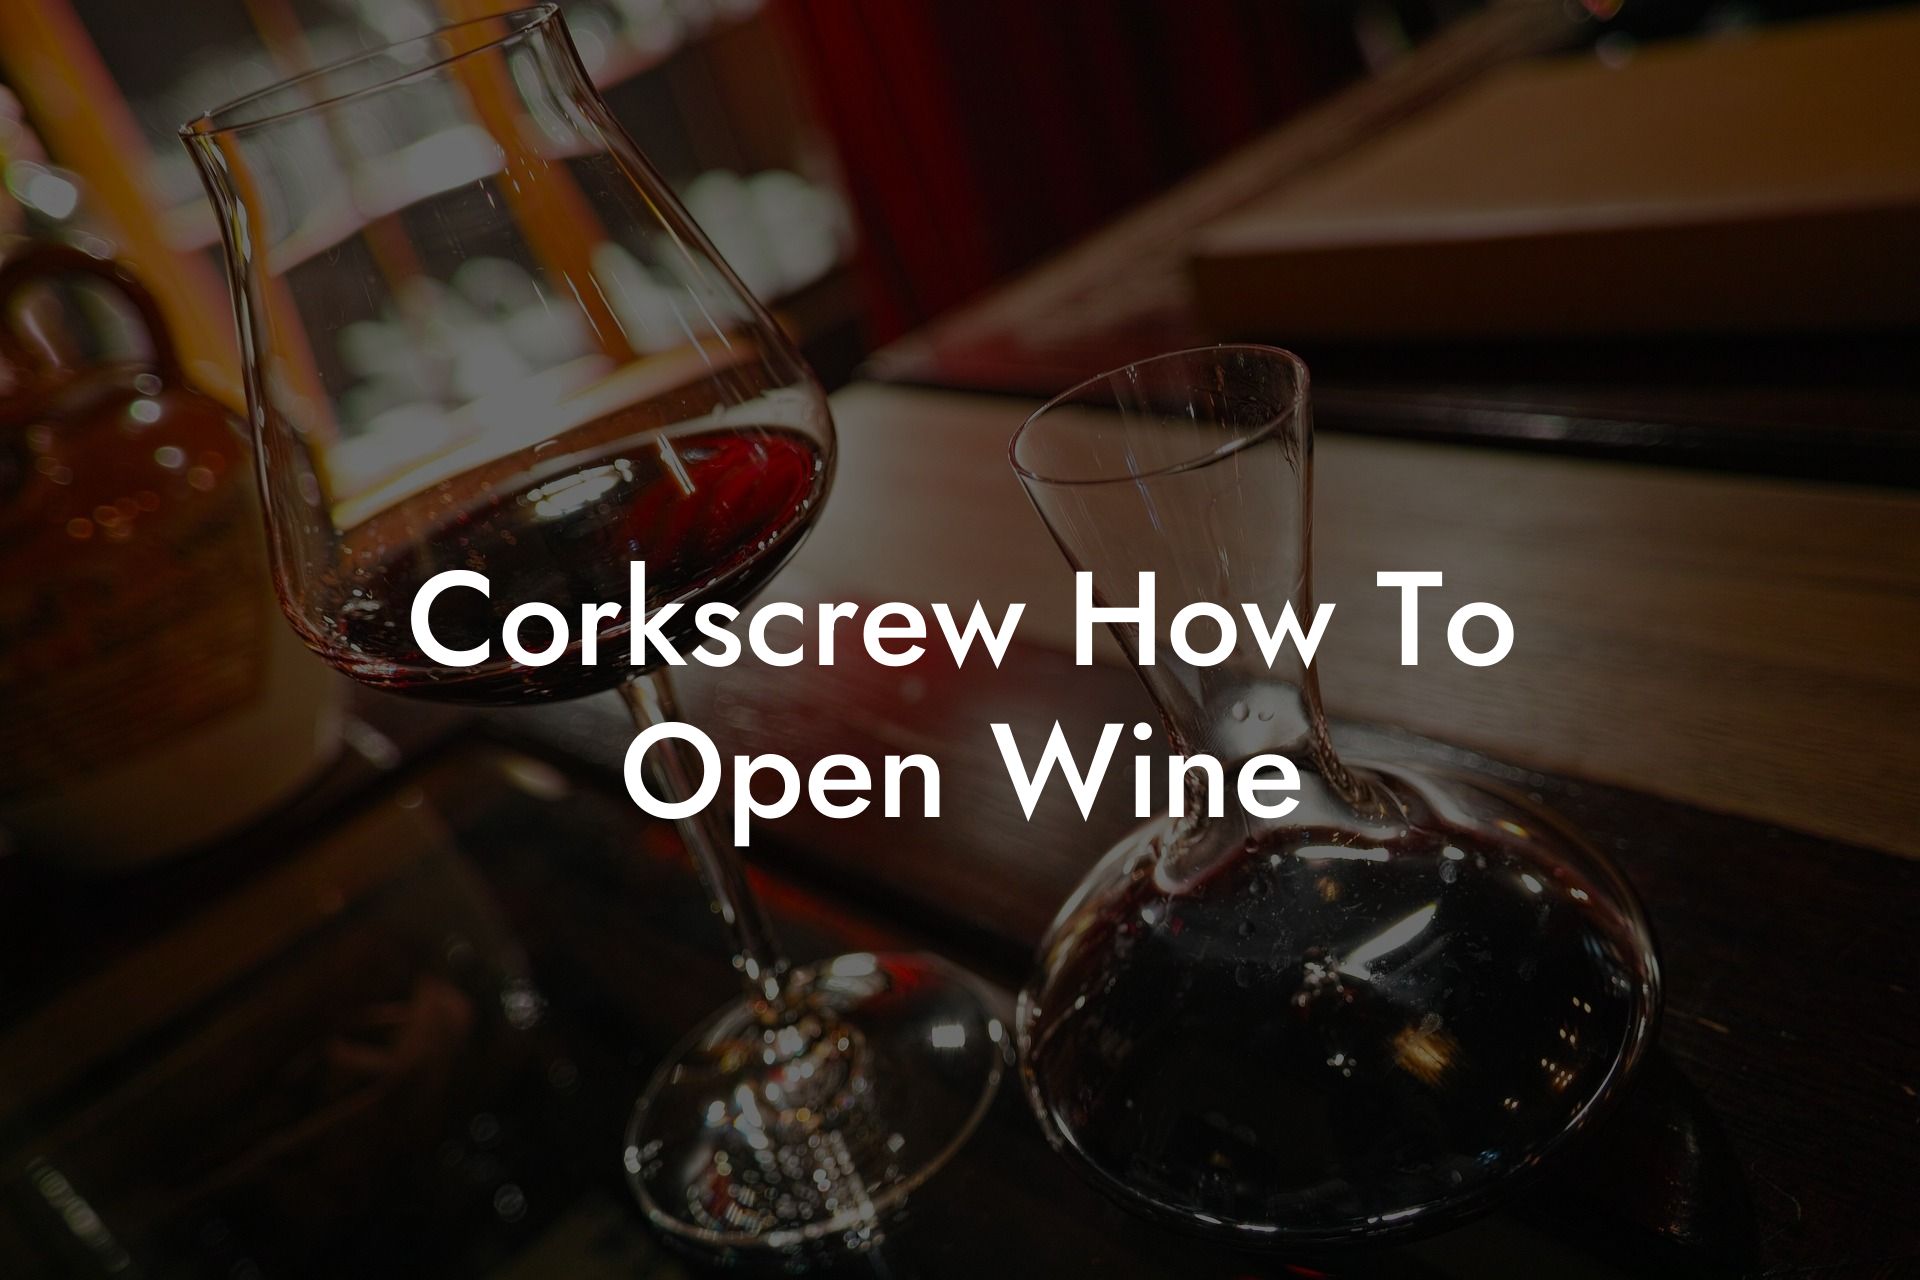 Corkscrew How To Open Wine